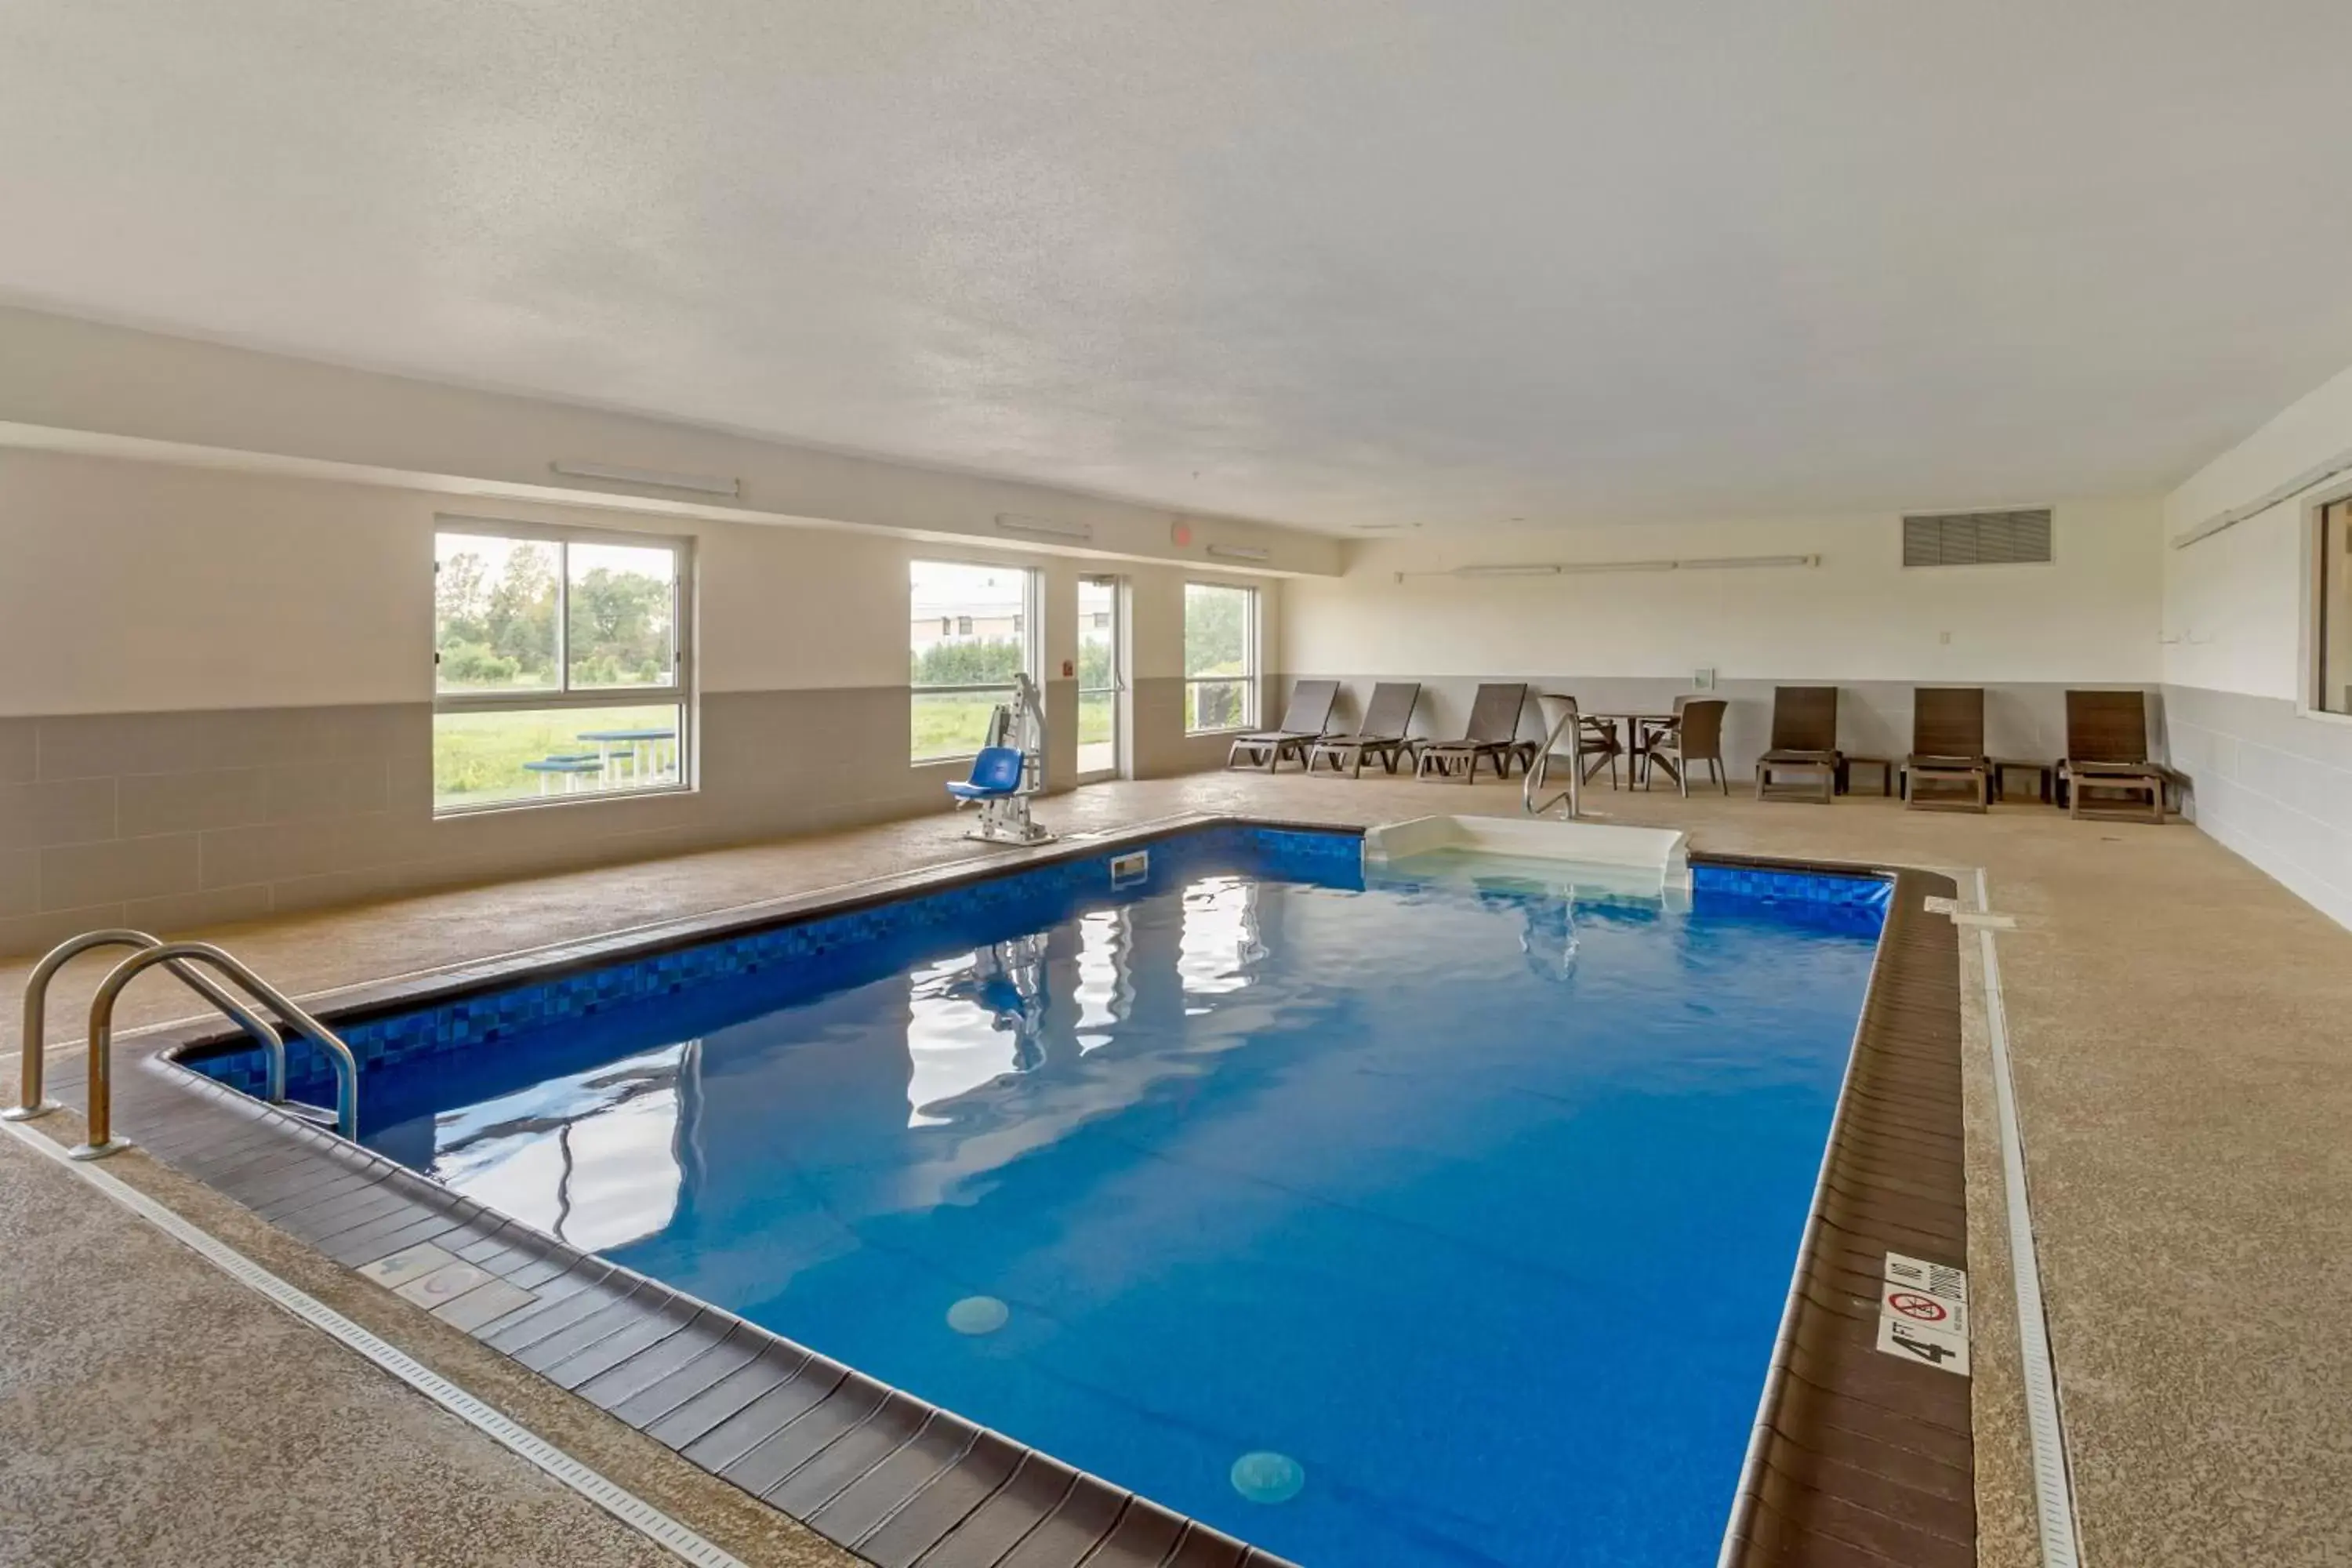 Pool view, Swimming Pool in Comfort Inn Hobart - Merrillville